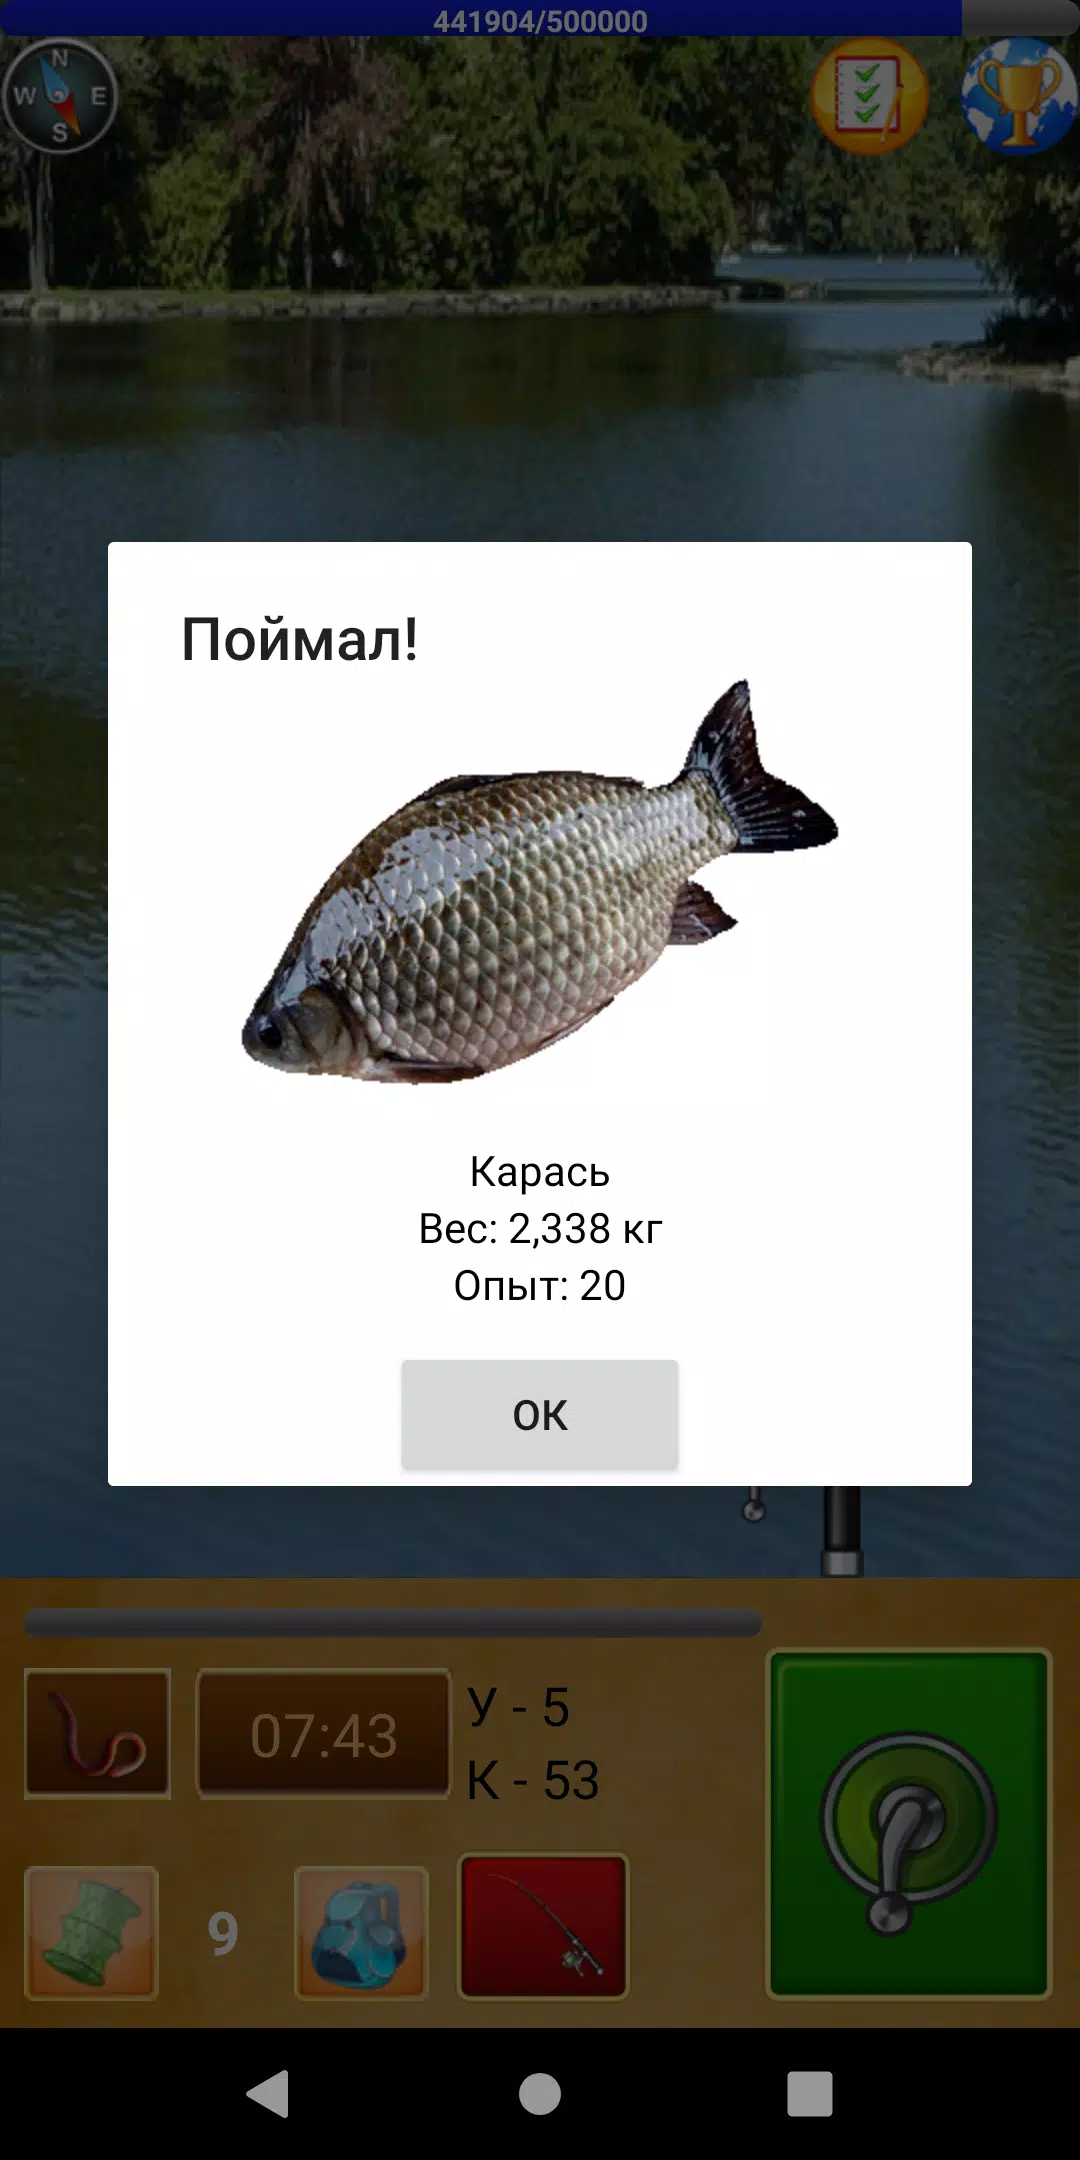 рыбалка для друзей на сенсорный телефон